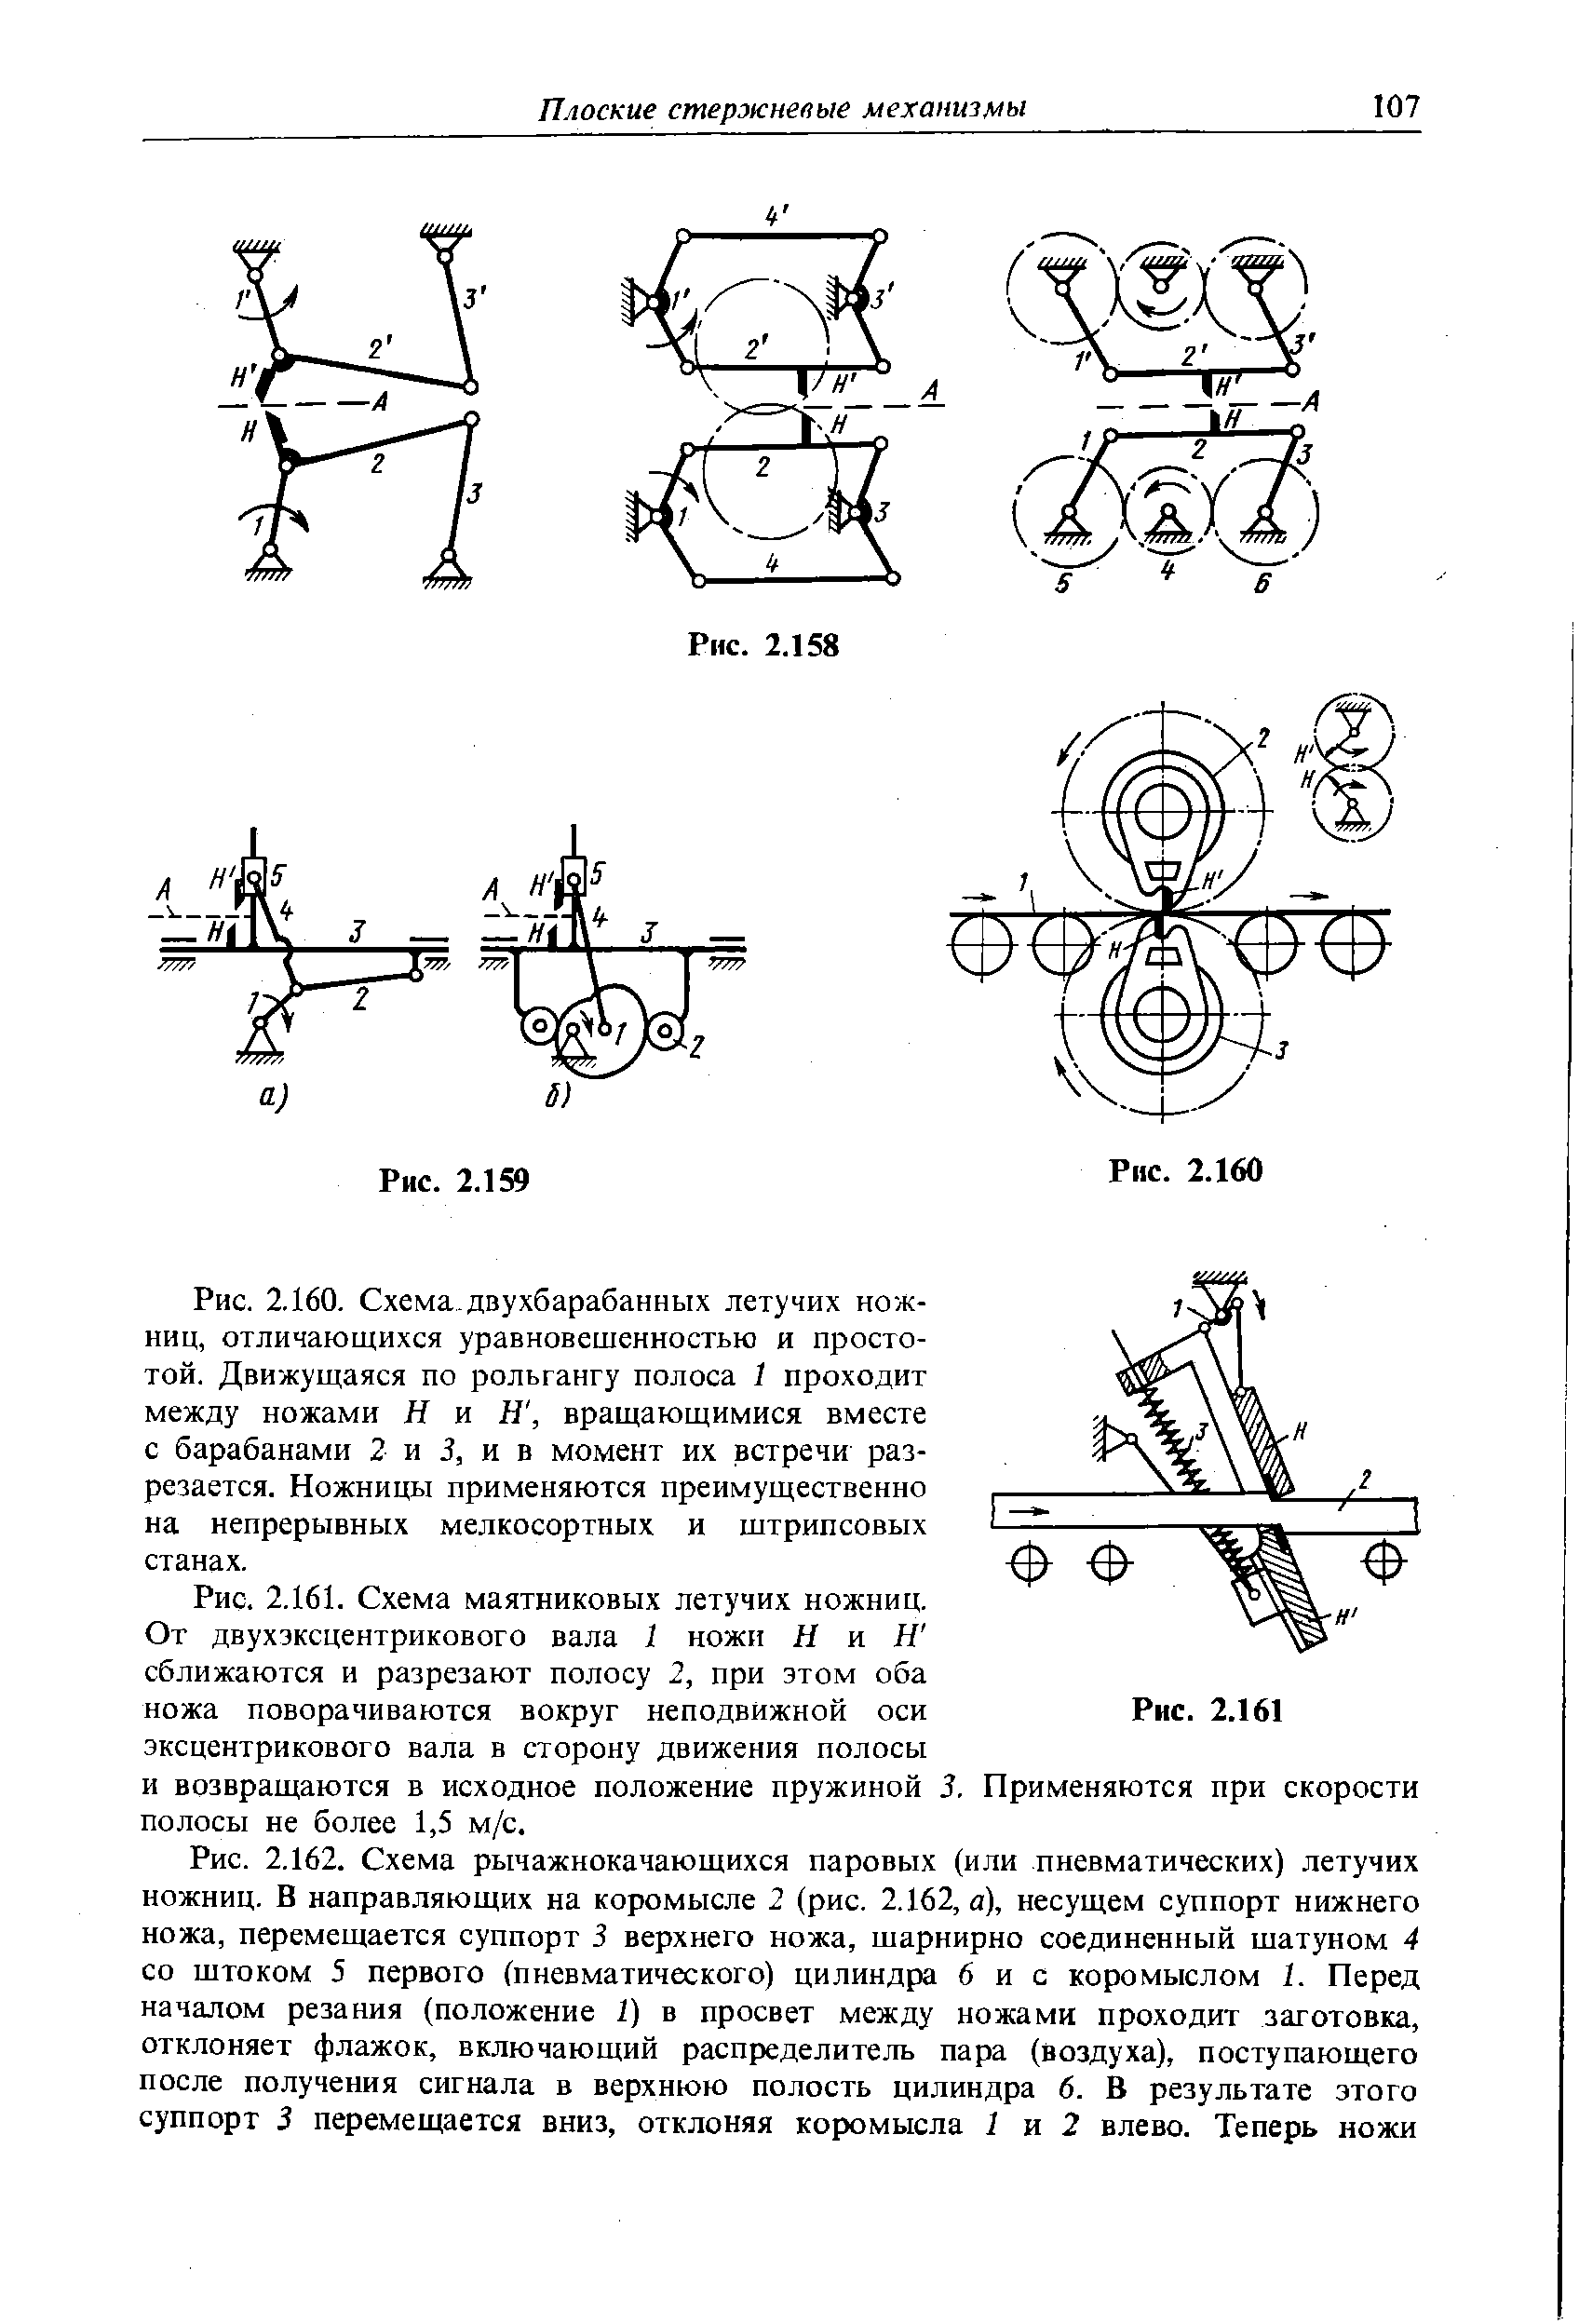 Рис. 2.161. Схема маятниковых летучих ножниц.
